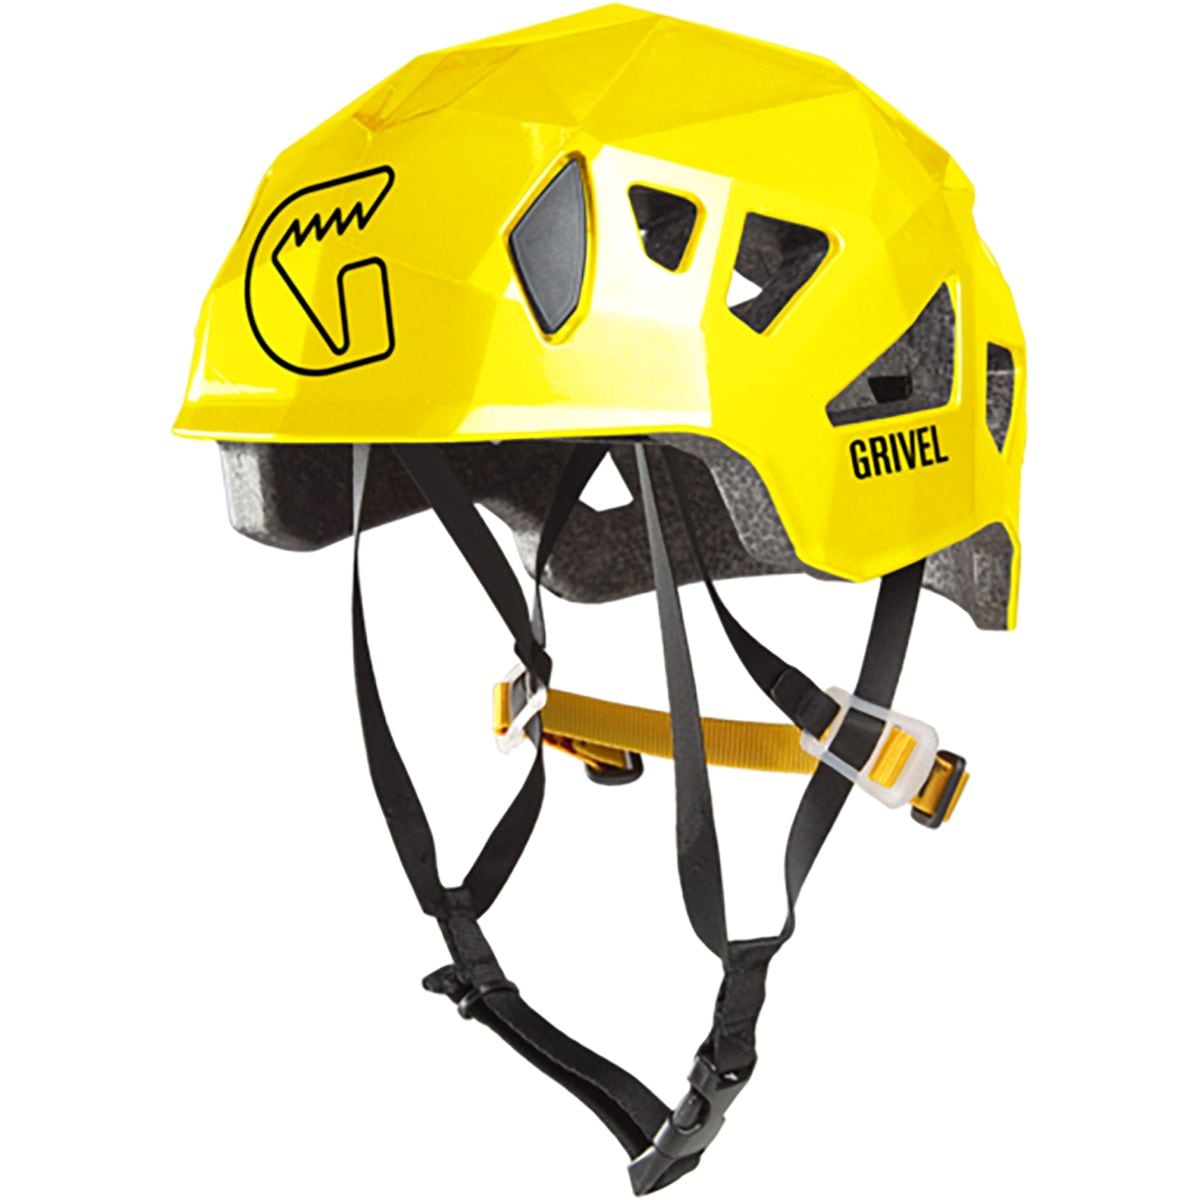 Photos - Climbing Gear Grivel Stealth Climbing Helmet 